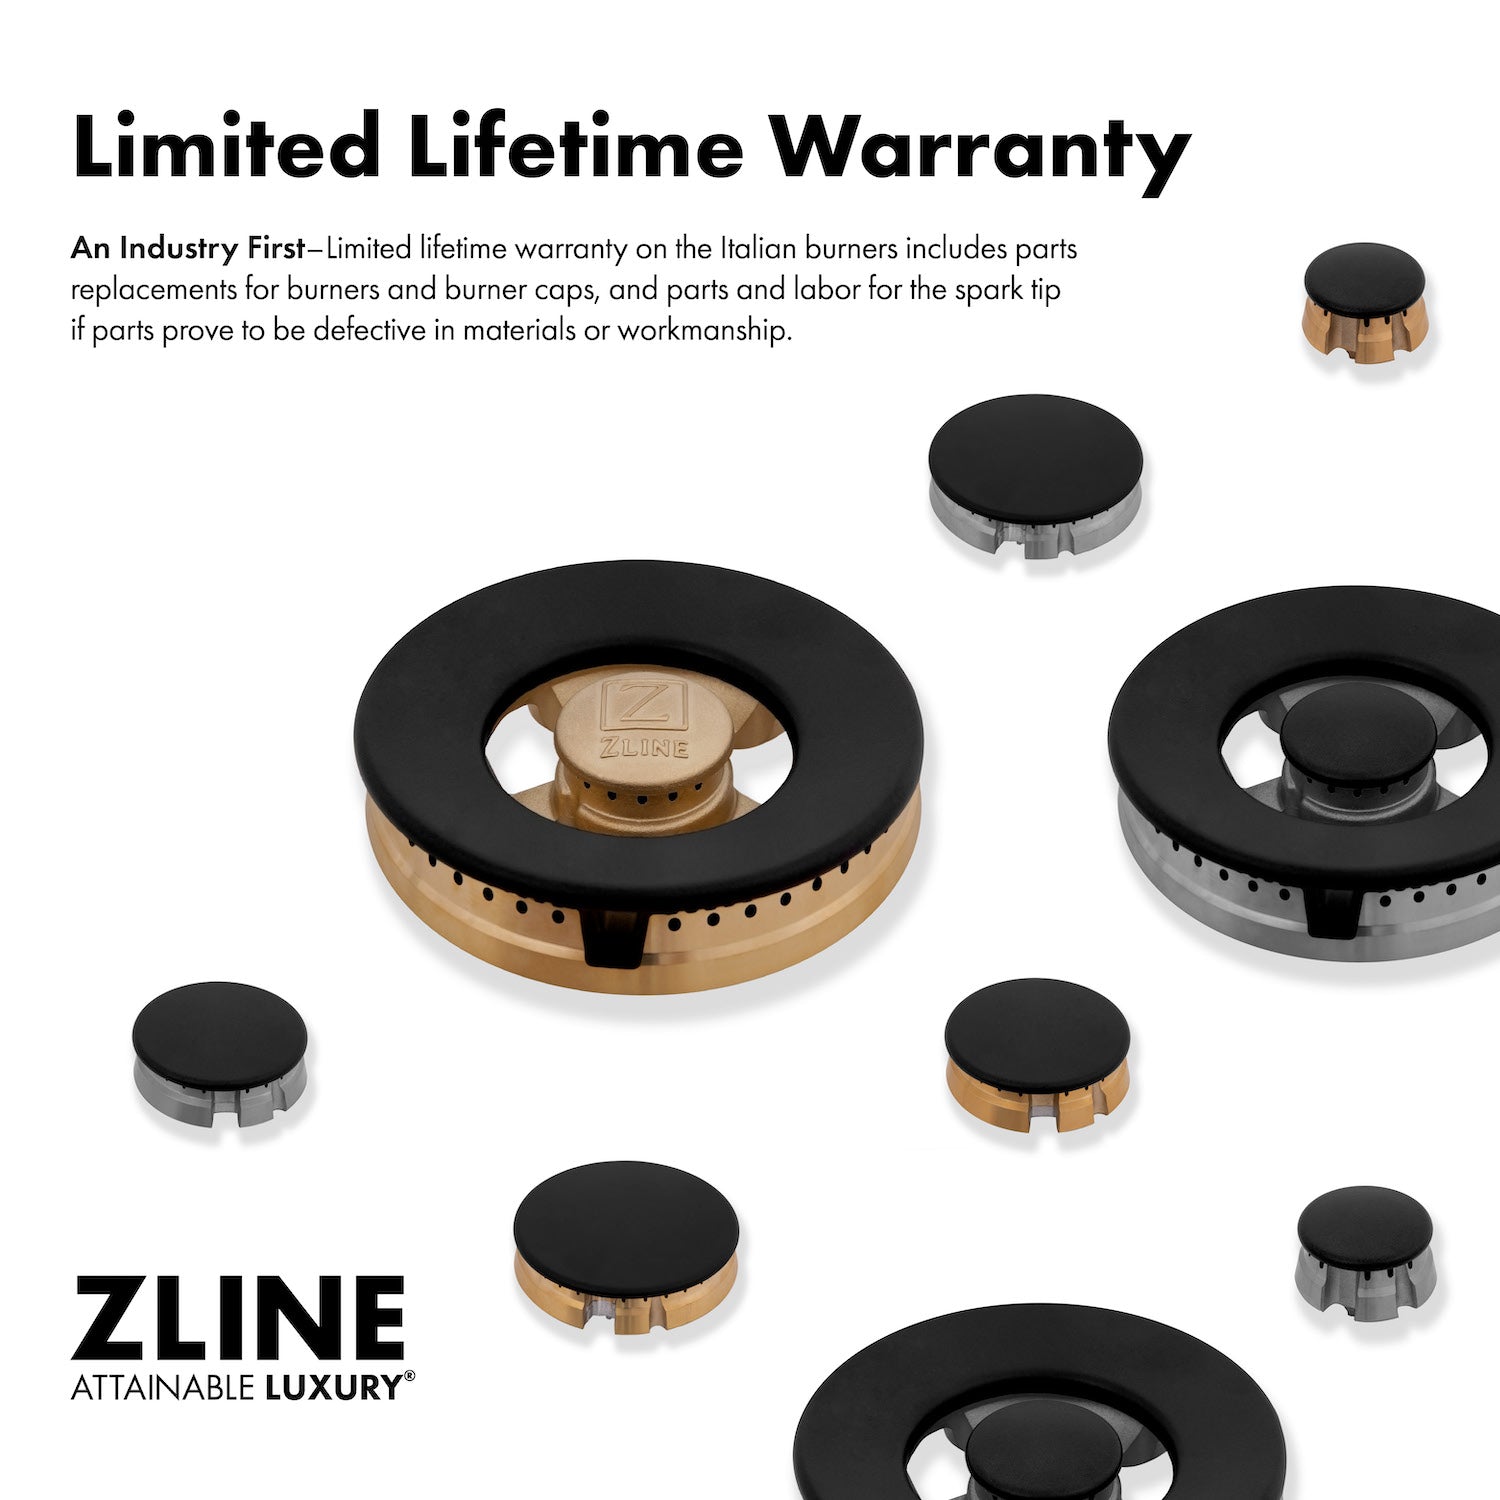 ZLINE 24" Professional Dual Fuel Range - Fingerprint Resistant Stainless Steel with Color Door Options